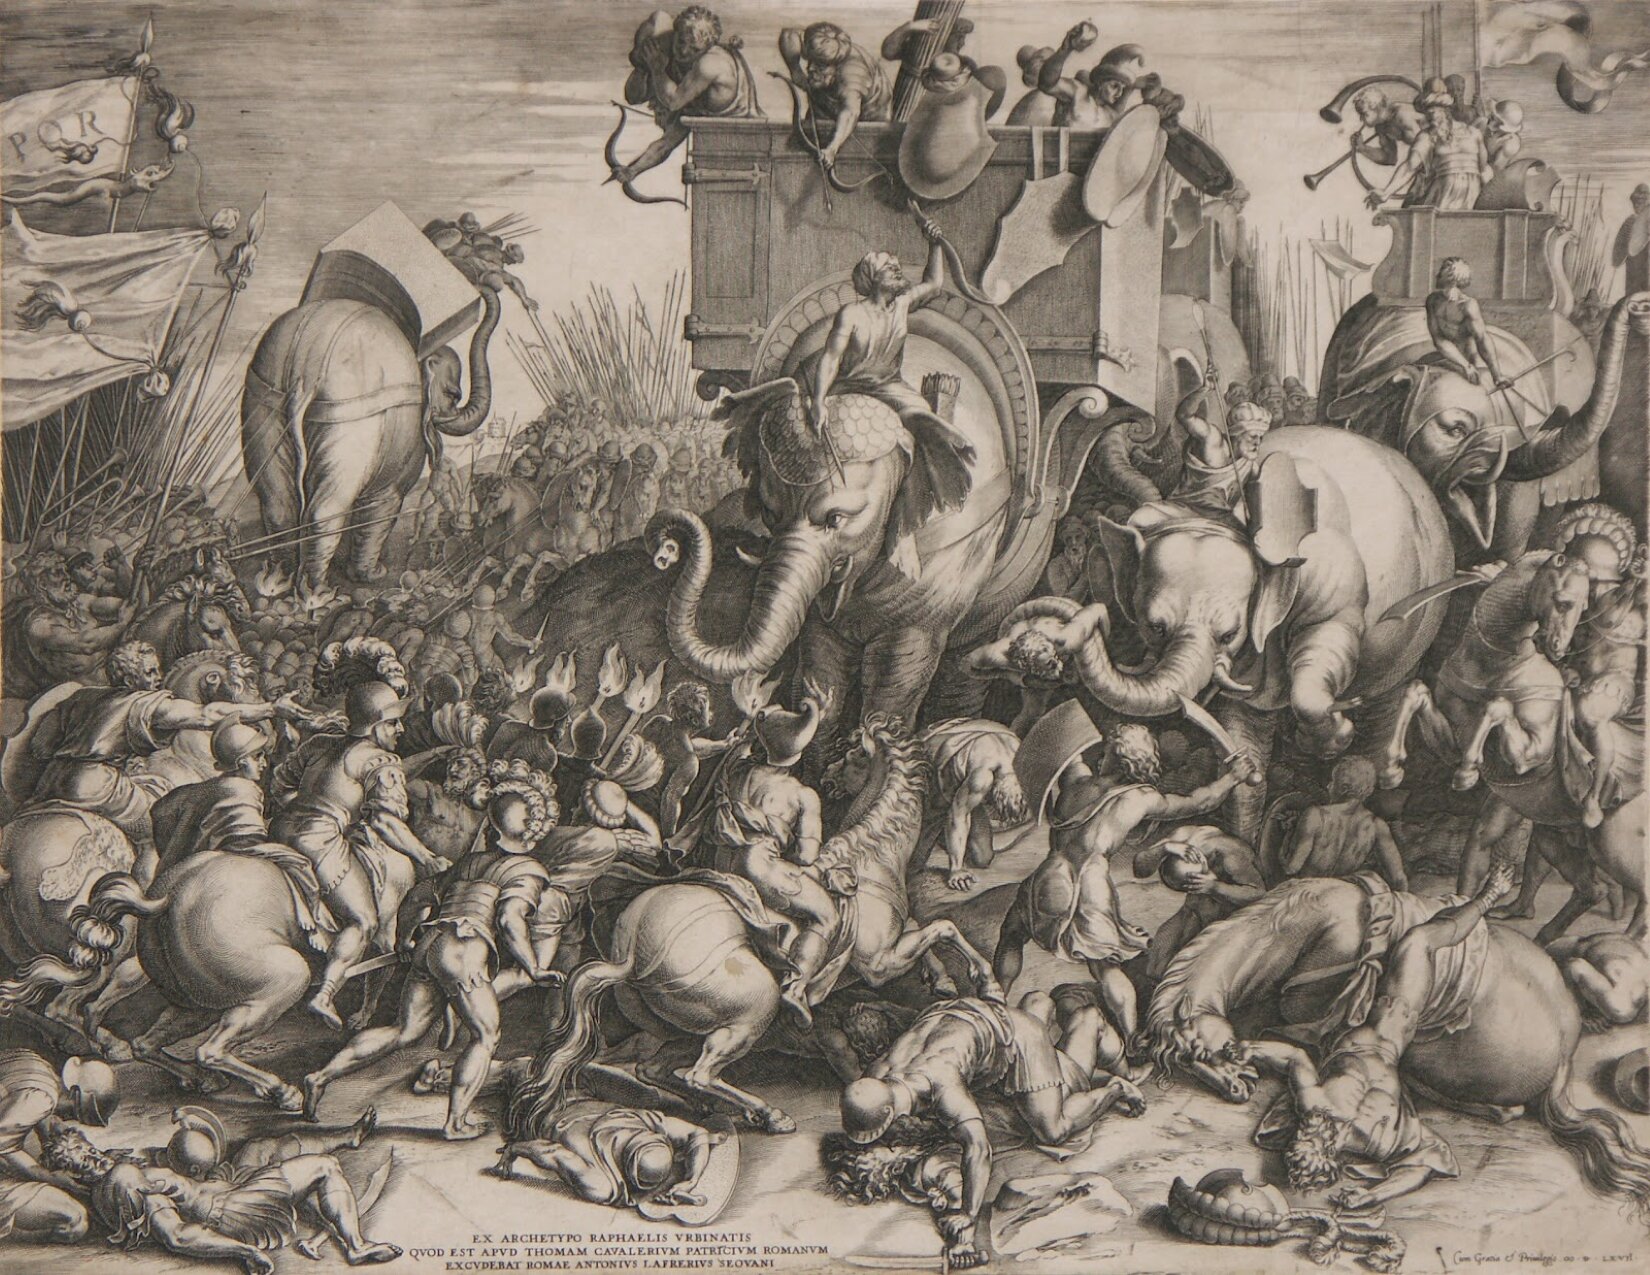 Czarno-biała ilustracja autorstwa Cornelisa Corta pod tytułem „Bitwa pod Zamą” przedstawia scenę, w której to oddziały armii rzymskiej napierają na broniące się wojska kartagińskie. Na pierwszym planie autor umieścił walczącą z wojskami nieprzyjaciela rzymską jazdę konną wspieraną przez piechotę. Kartagińczycy wyposażeni byli w piechotę i słonie bojowe, do których przymocowano duże kosze służące do przewożenia łuczników. Rzymscy żołnierze próbują bezskutecznie odstraszyć zwierzęta za pomocą pochodni i włóczni. Na drugim planie można zauważyć inną grupę rzymskich żołnierzy walczących ze słoniem za pomocą włóczni. Na podłożu widoczni są leżący ludzie oraz konie, polegli w walce. Z lewej strony widoczne są uniesione chorągwie bojowe. 